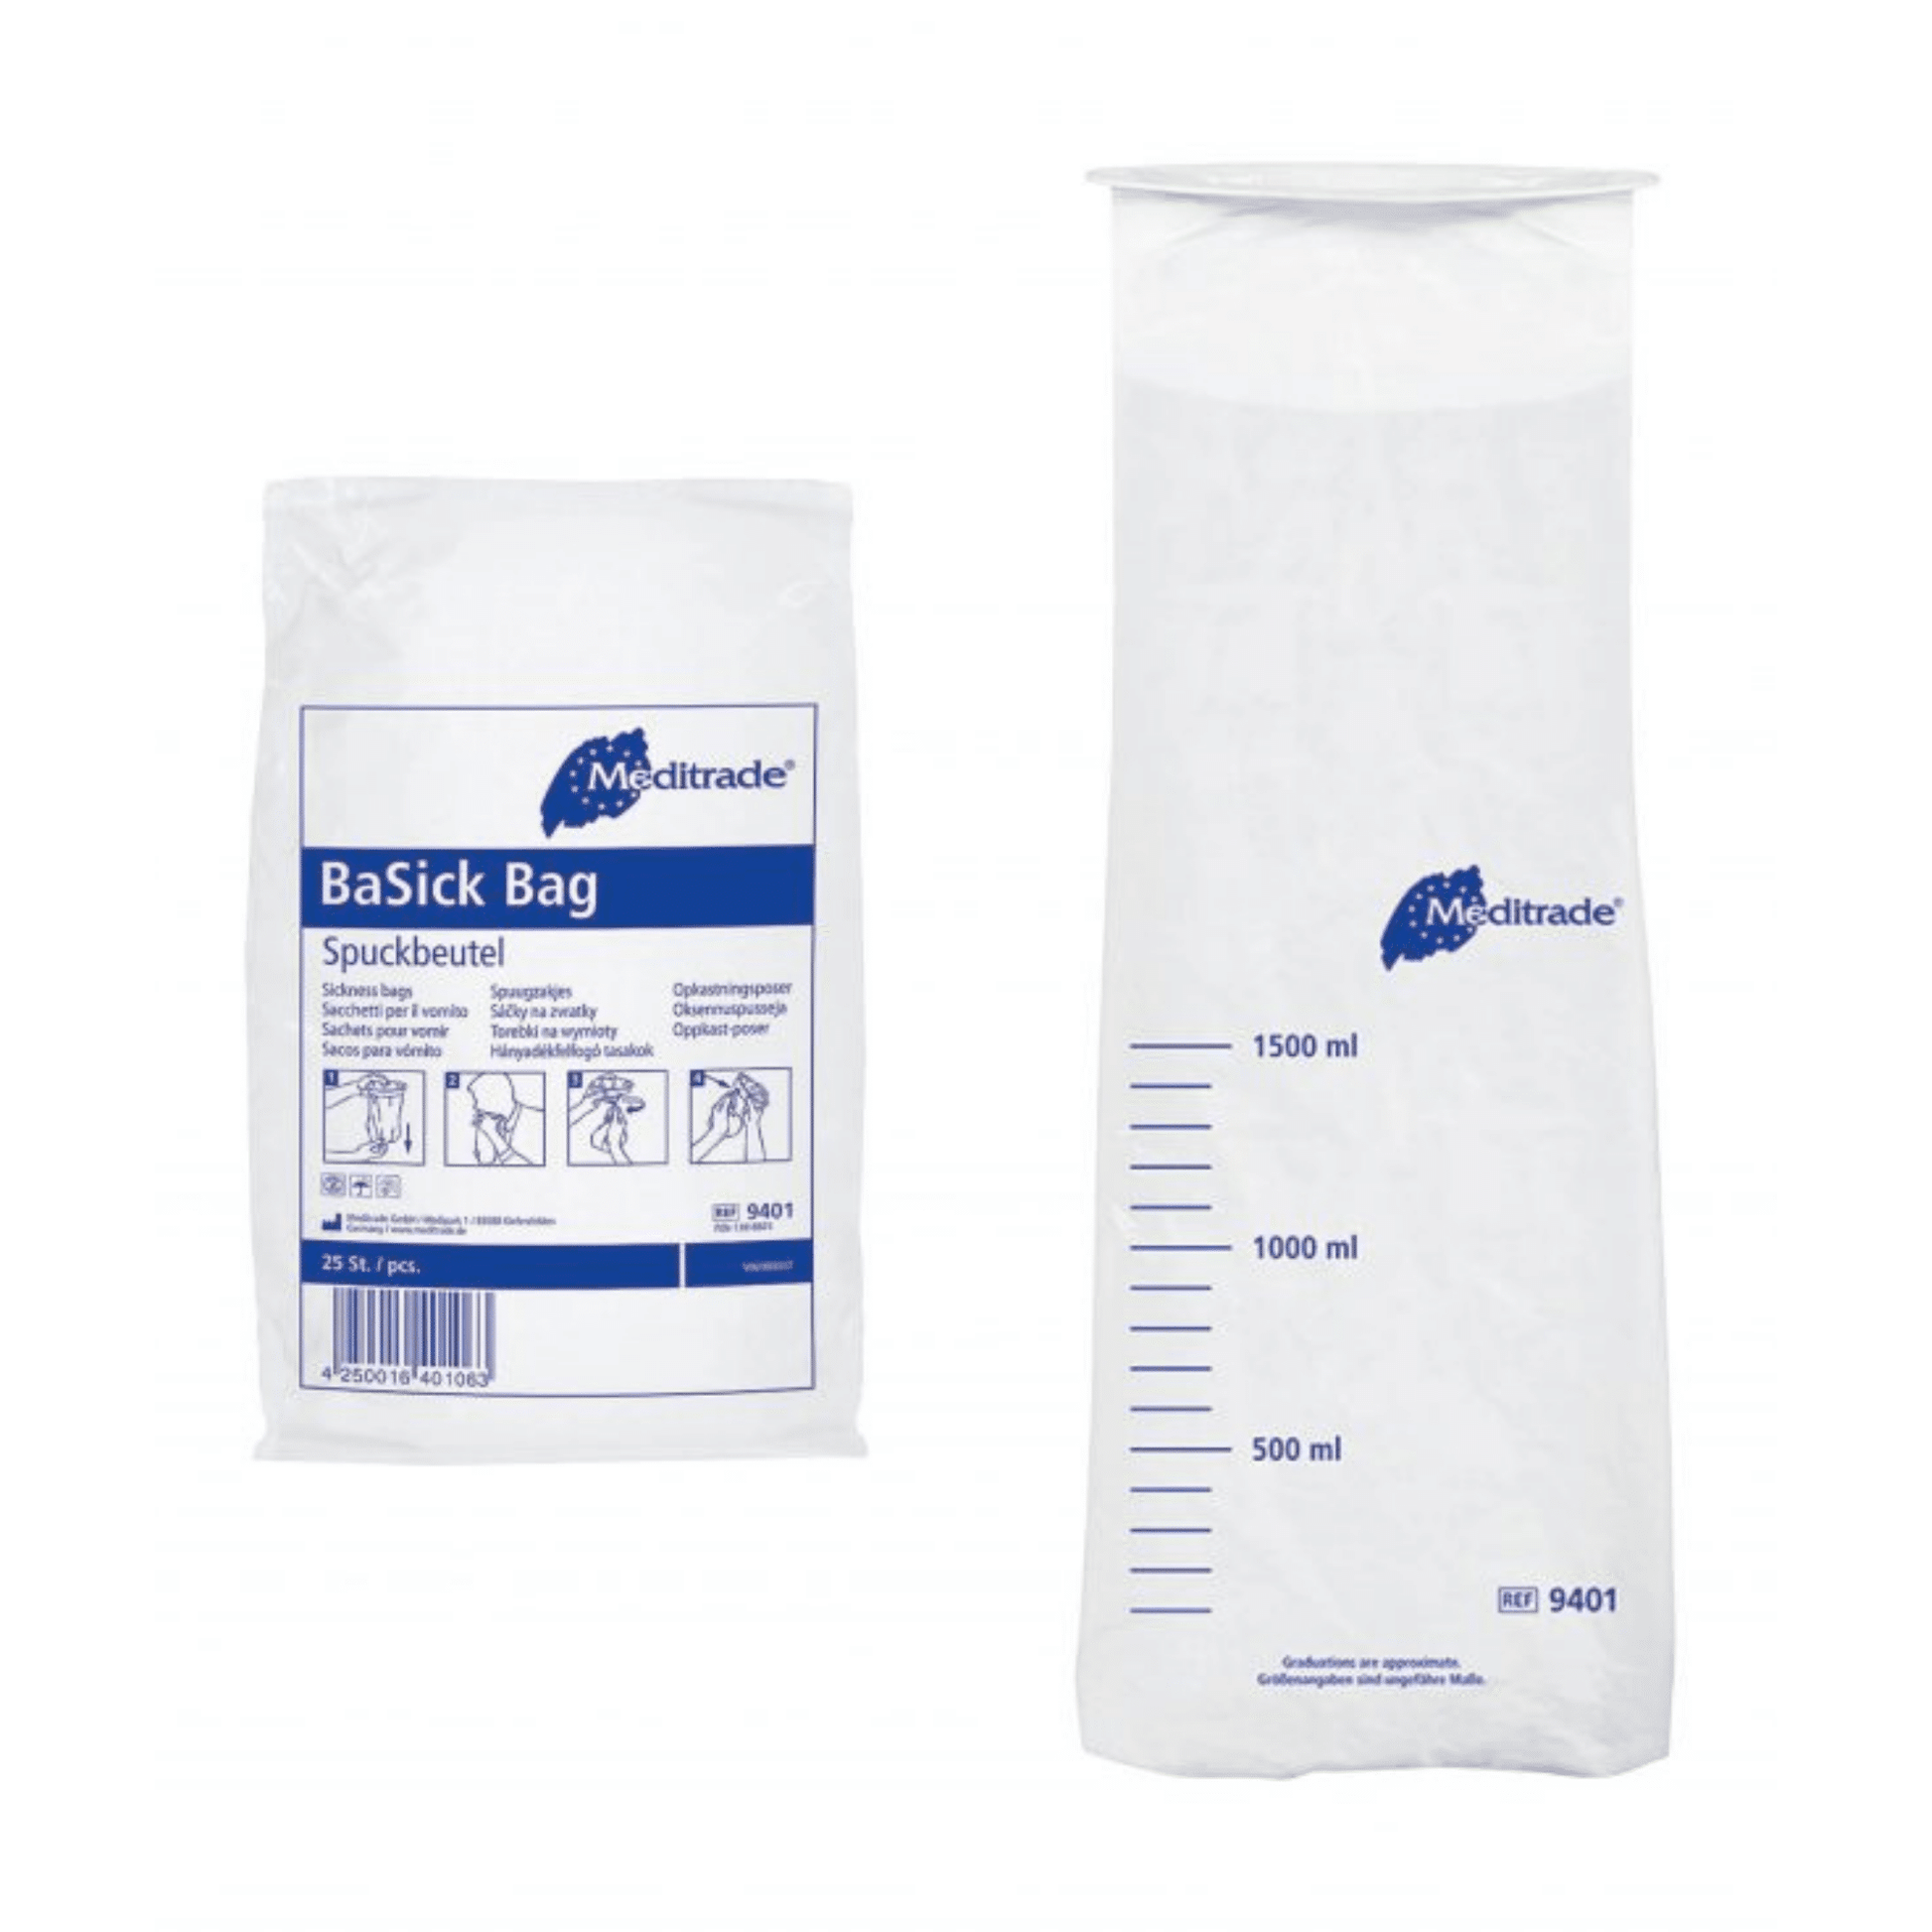 Zwei Ansichten einer Meditrade GmbH Meditrade BaSick Spuckbeutel Packung (25 Beutel), ein 1000 ml Polyethylen-Spuckbeutel mit blauer Beschriftung, zeigt Vorder- und Rückseitendesign, mit Text und Verwendung